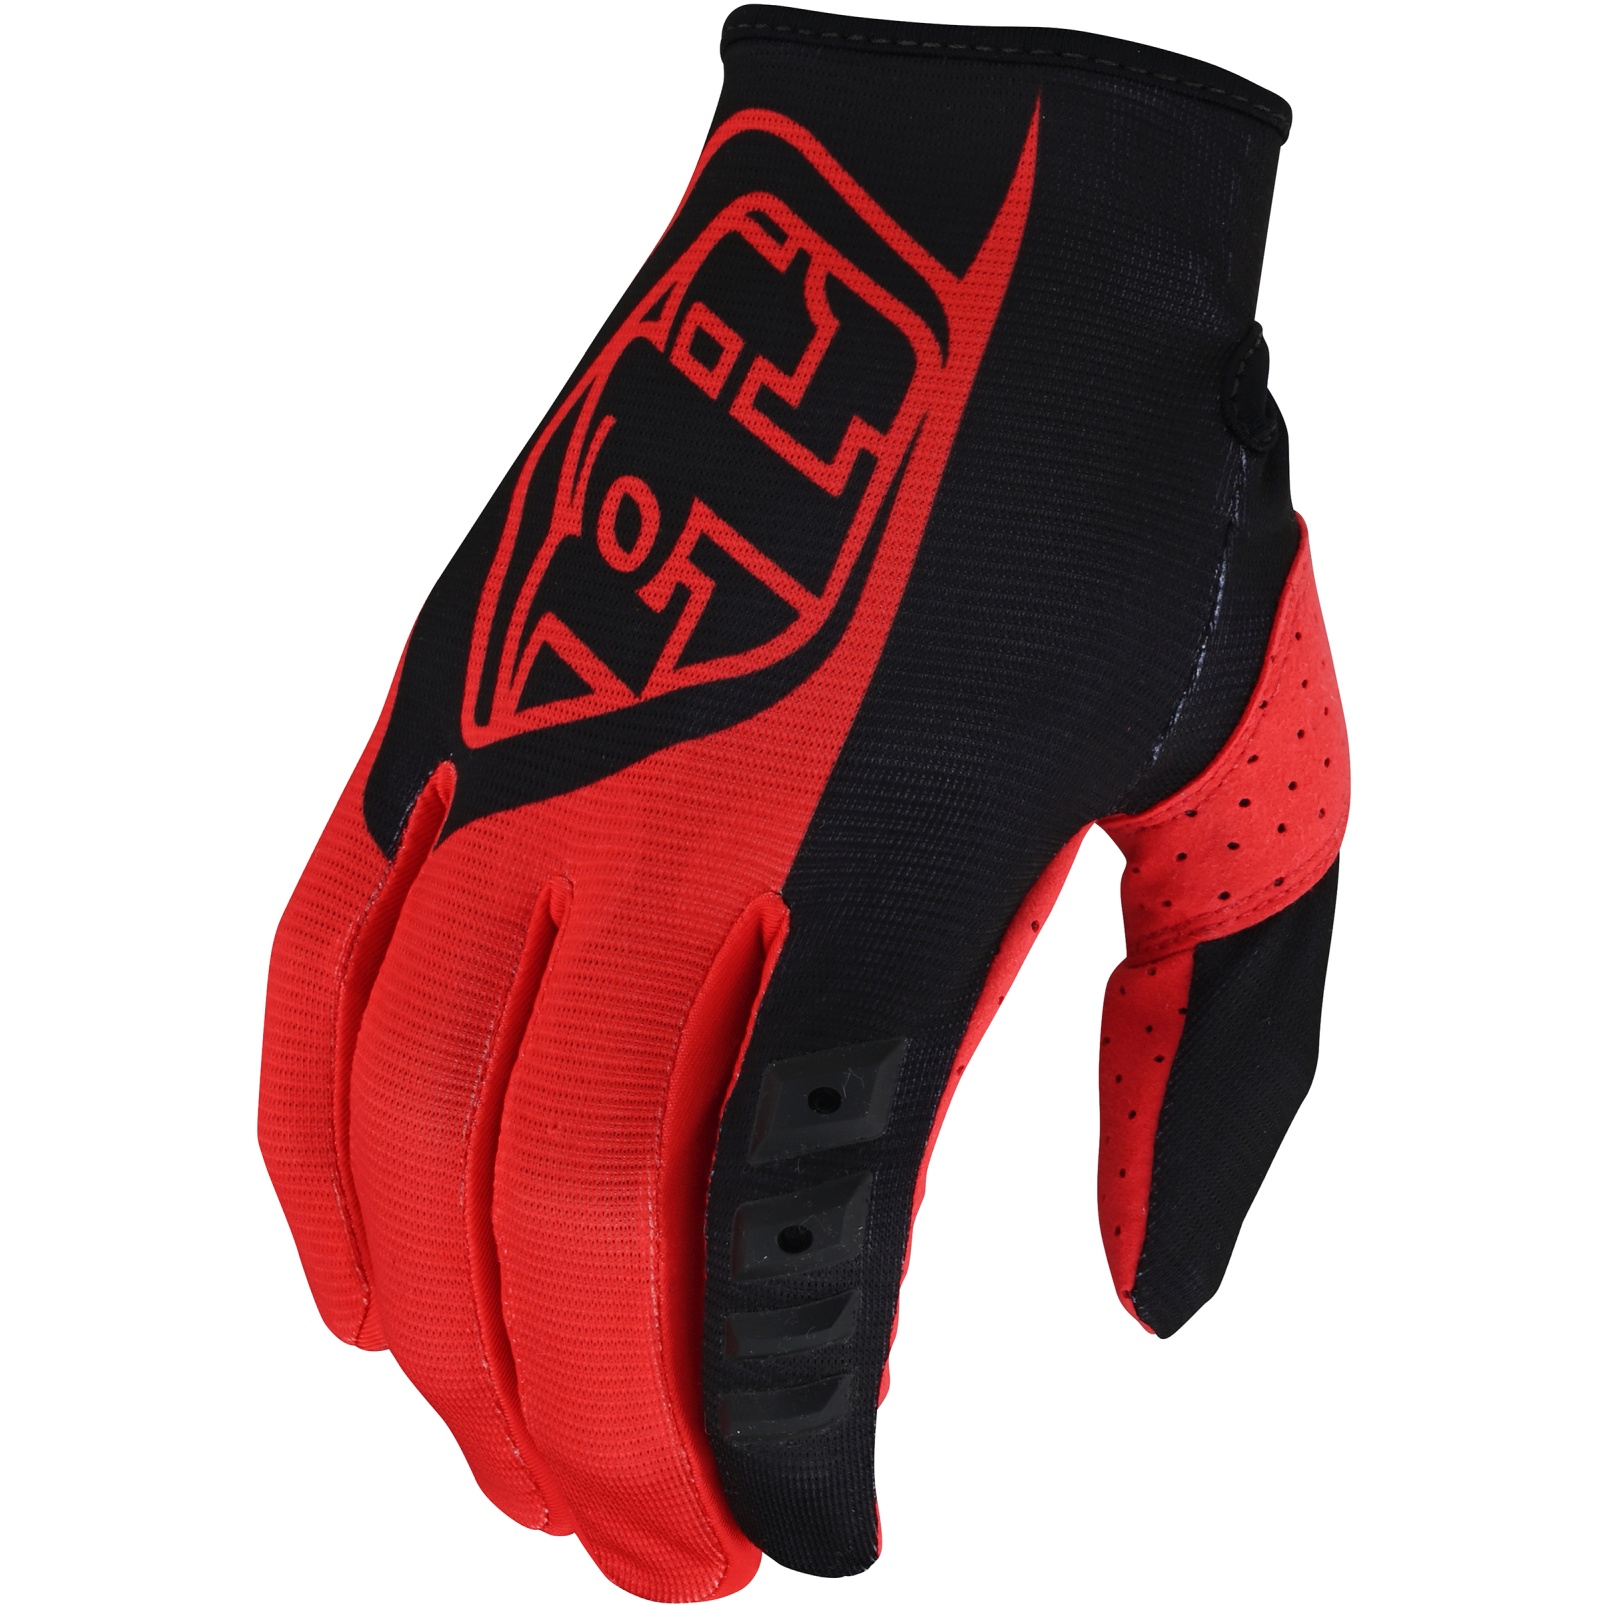 Produktbild von Troy Lee Designs GP Handschuhe - Rot